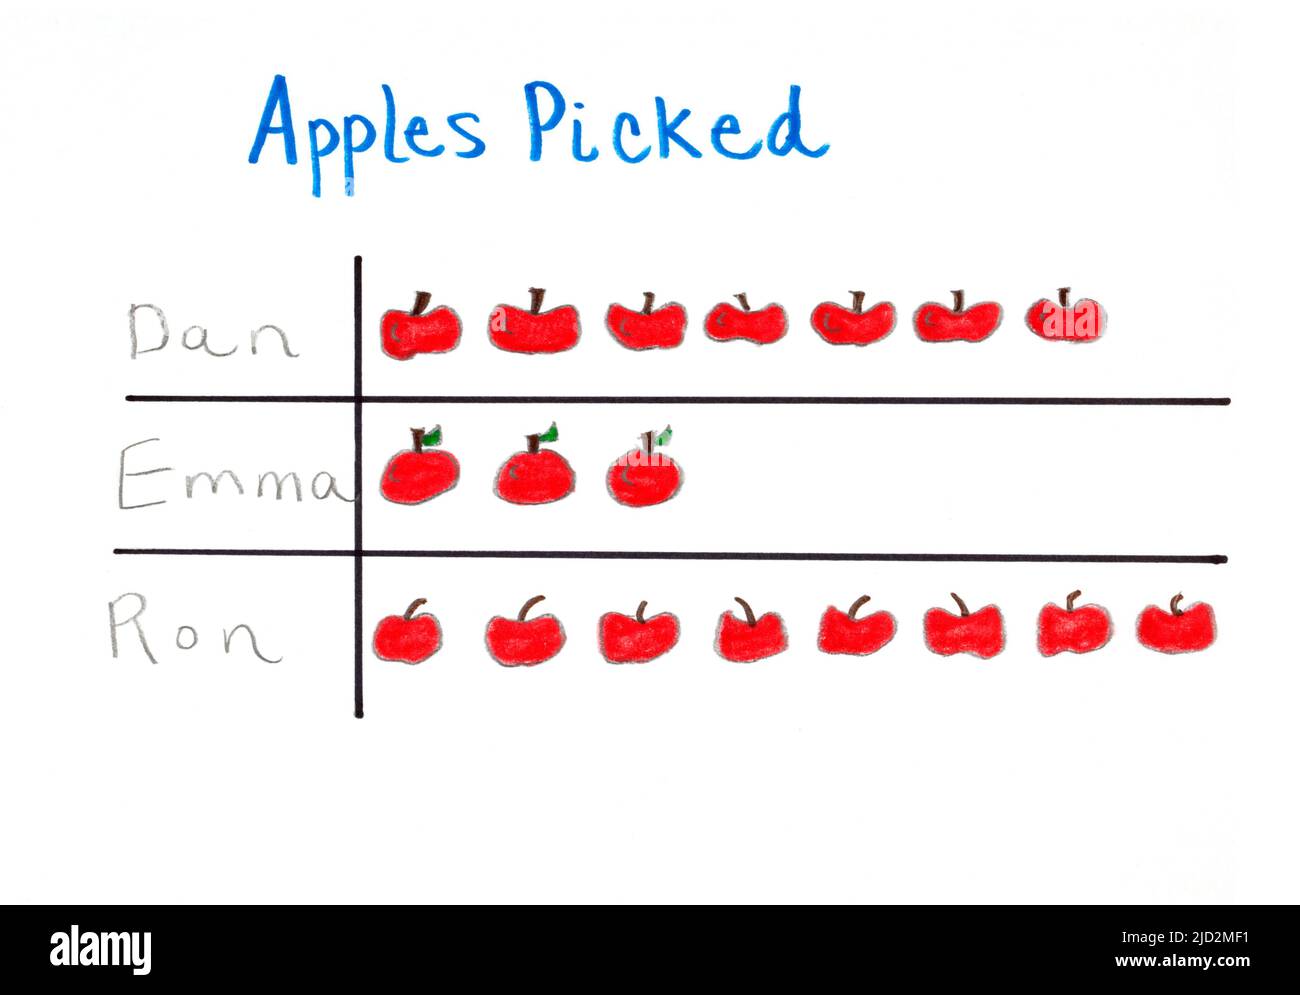 Un pictogramme ou un pictogramme de l’enfant et un graphique présentant un ensemble de données sur le nombre de pommes cueillies par trois personnes. Banque D'Images